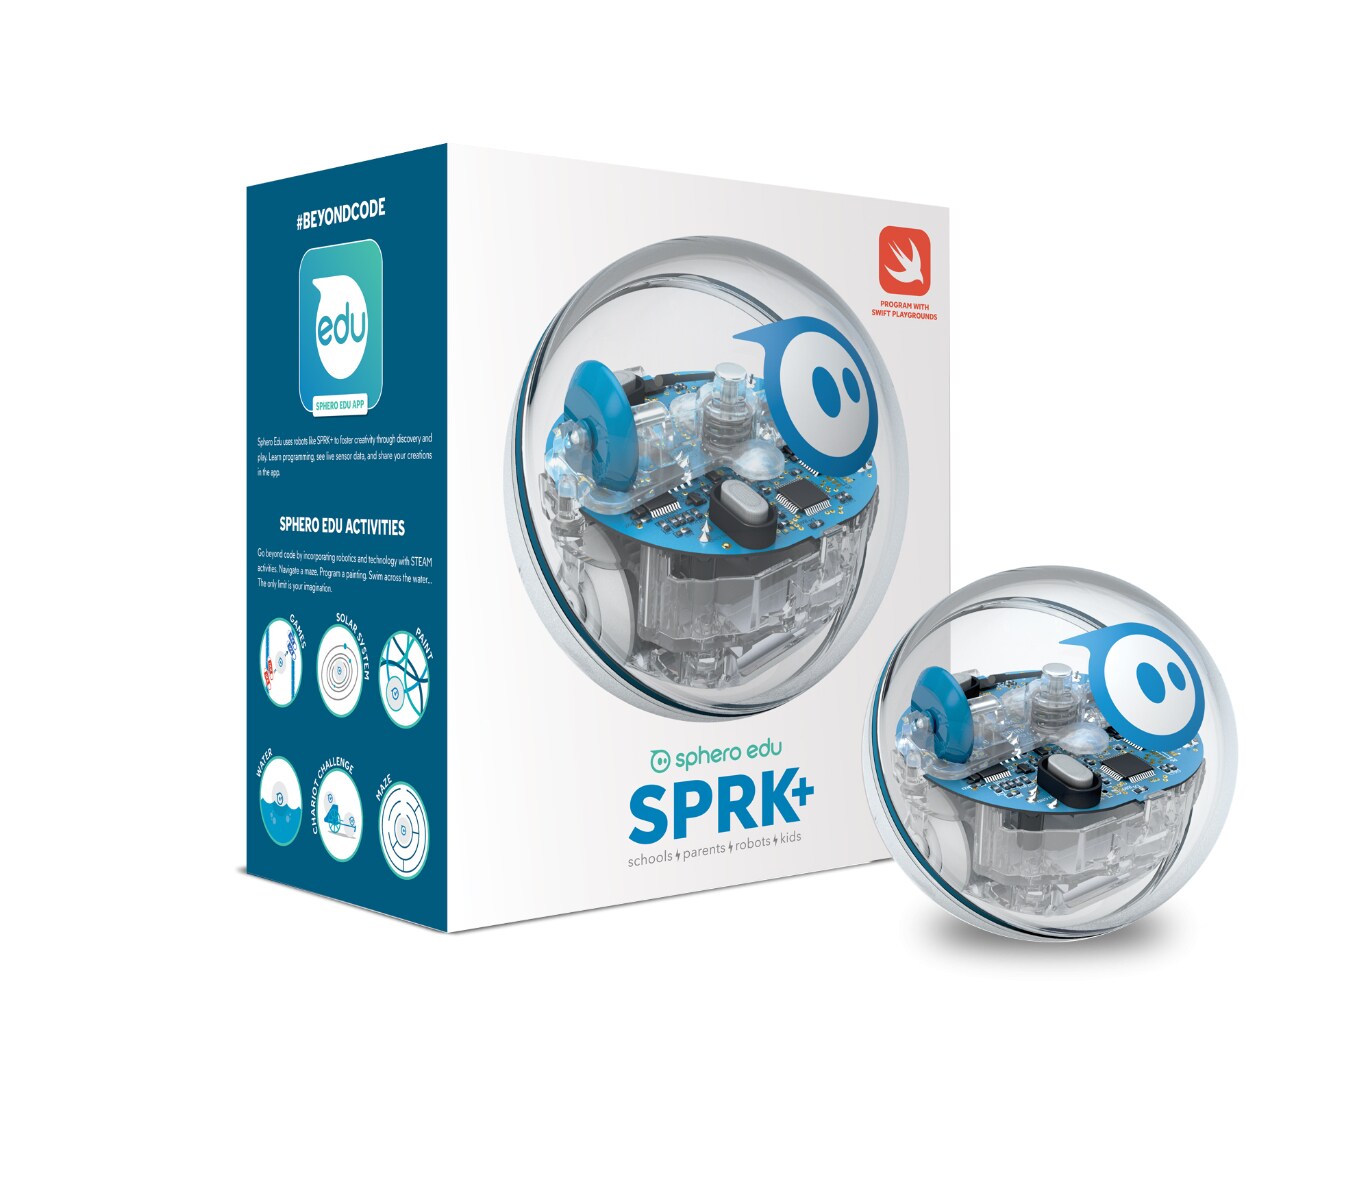 sphero education pack